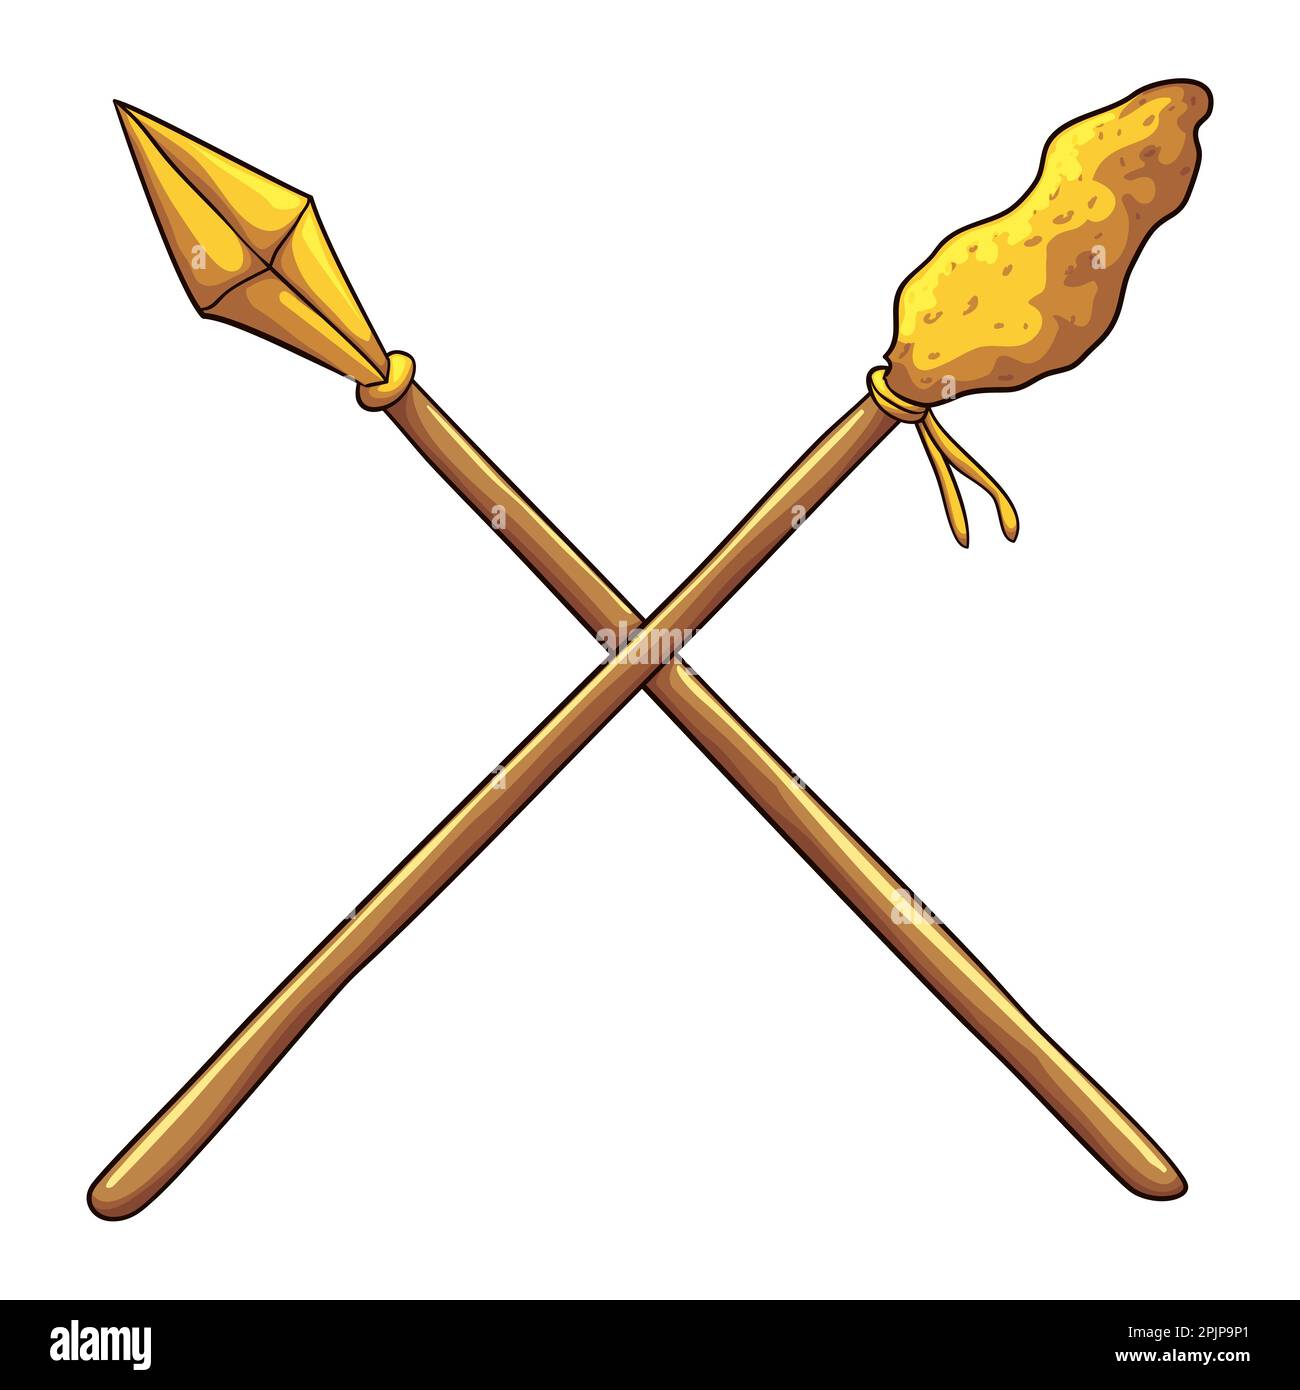 Goldene Lanze von Longinus gekreuzt mit Stephatons Stock mit Schwamm, getränkt in Essigwein. Religiöses Design im Cartoon-Stil. Stock Vektor